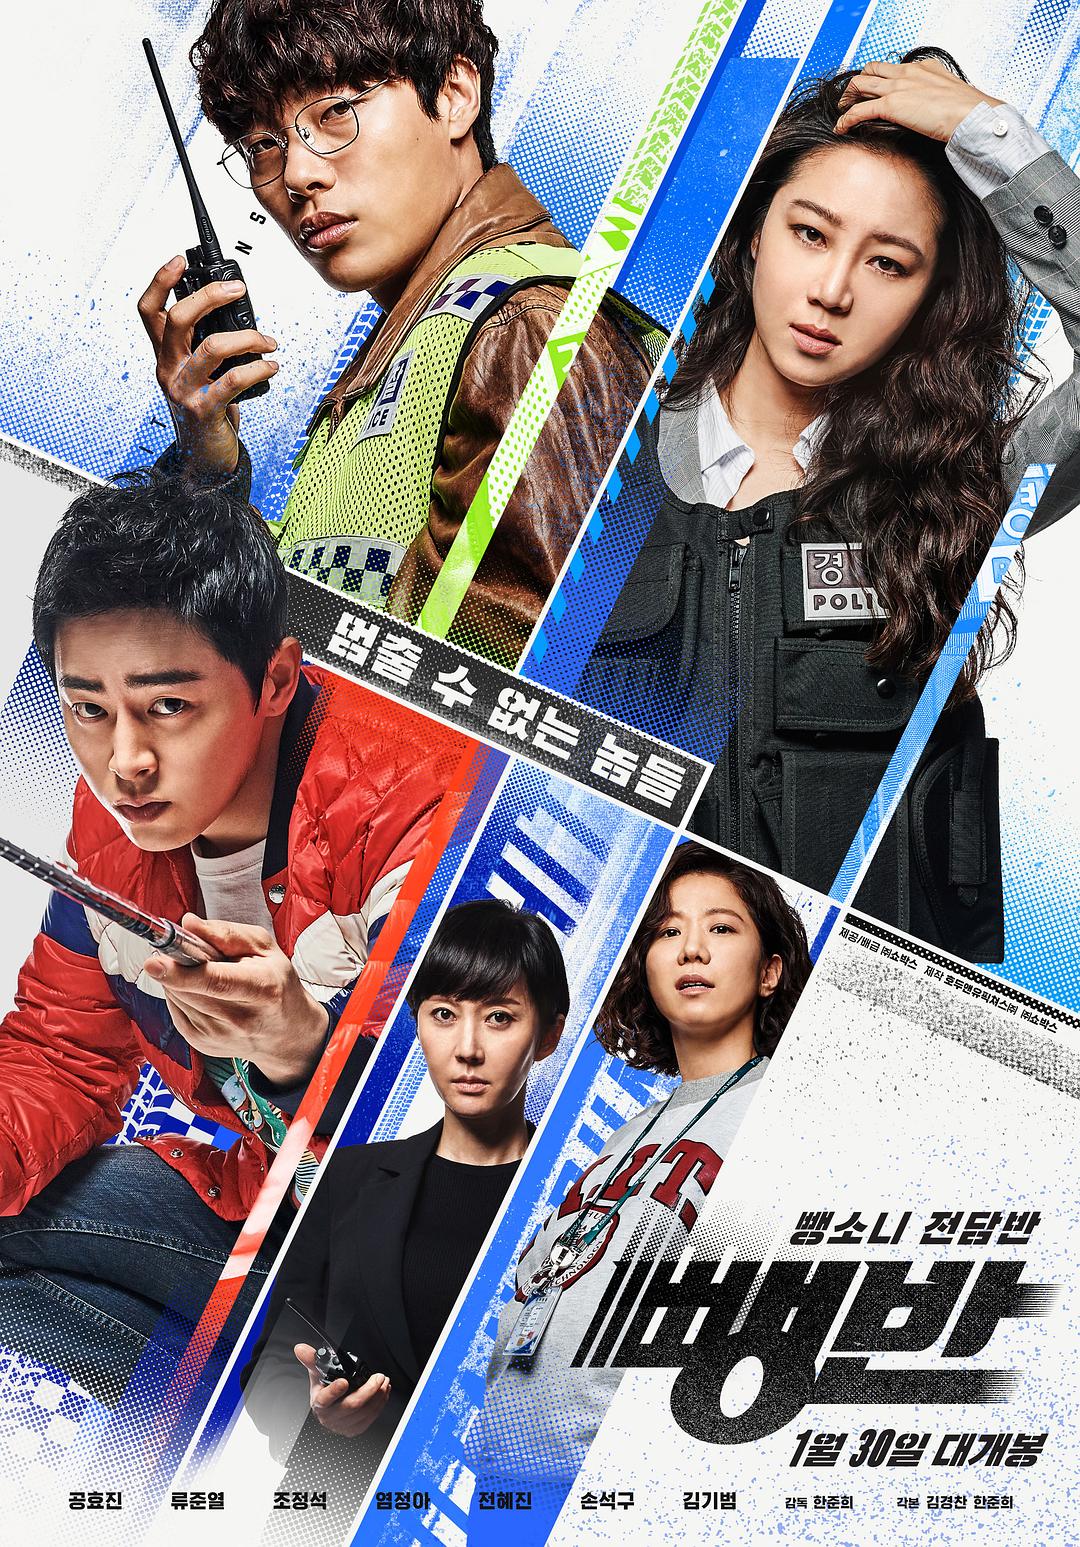 逃组 Hit-and-Run.Squad.2019.KOREAN.1080p.BluRay.REMUX.AVC.DTS-HD.MA.5.1-FGT 34.18GB-1.png